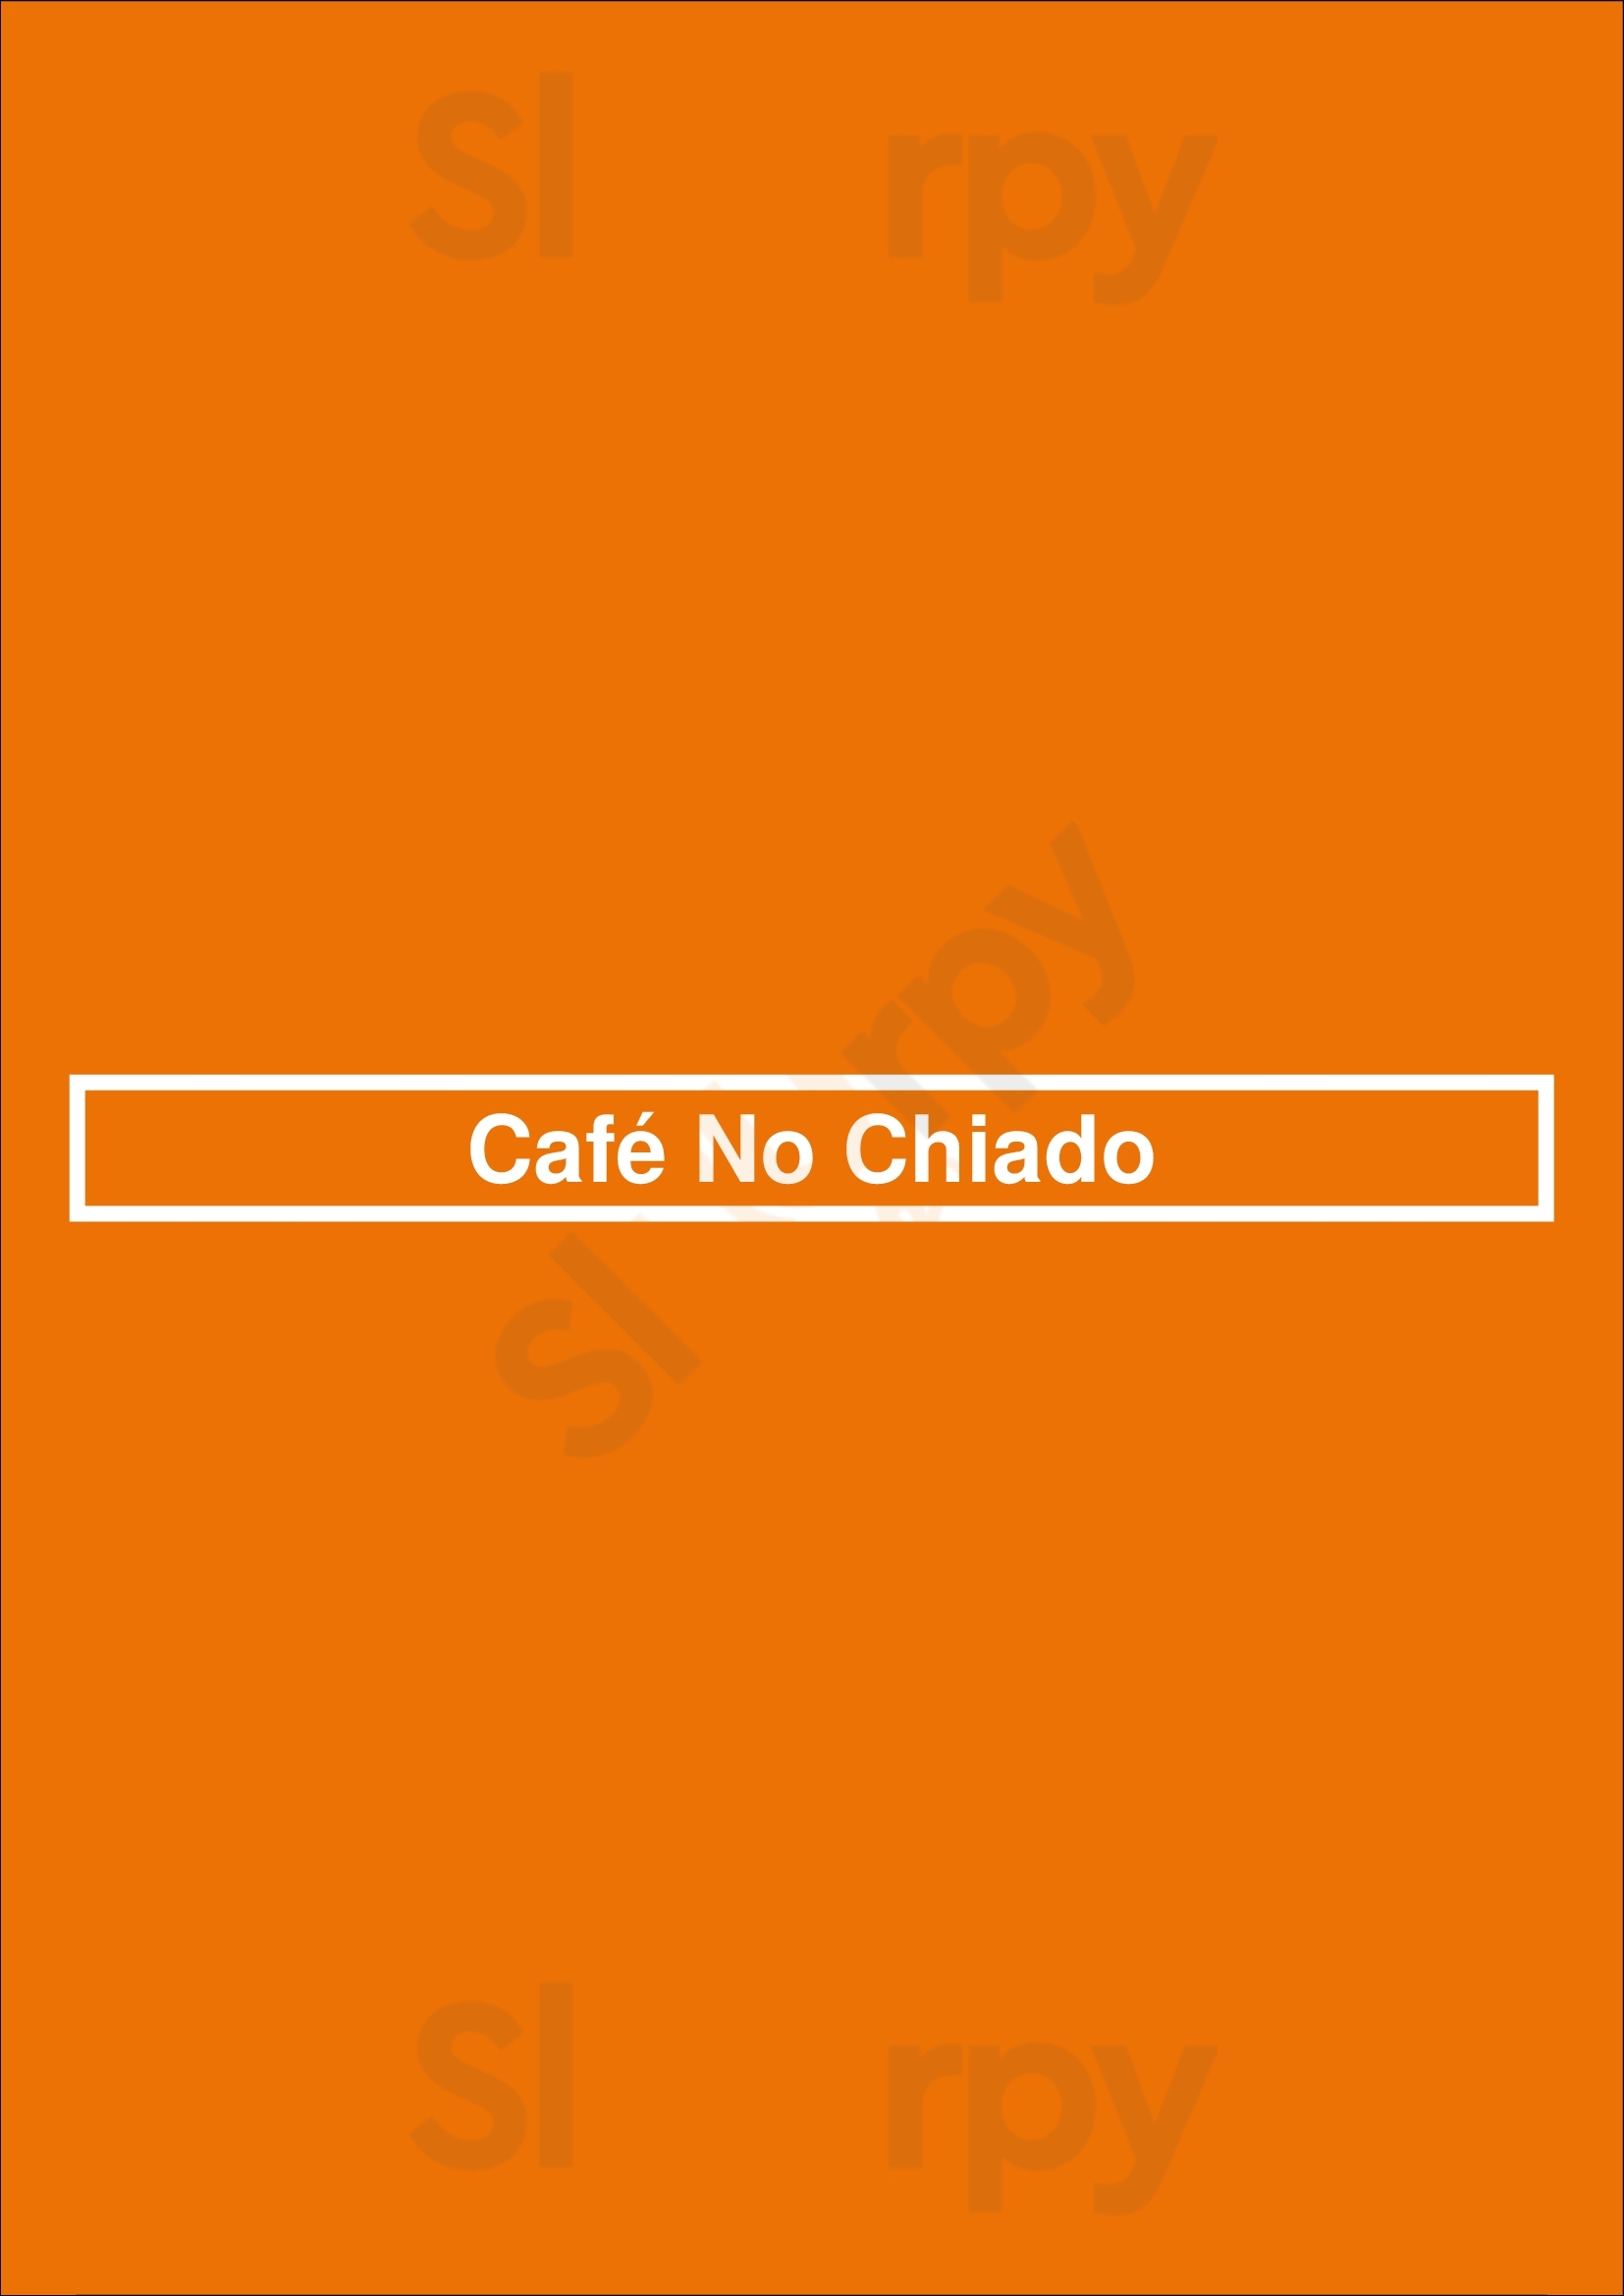 Café No Chiado Lisboa Menu - 1